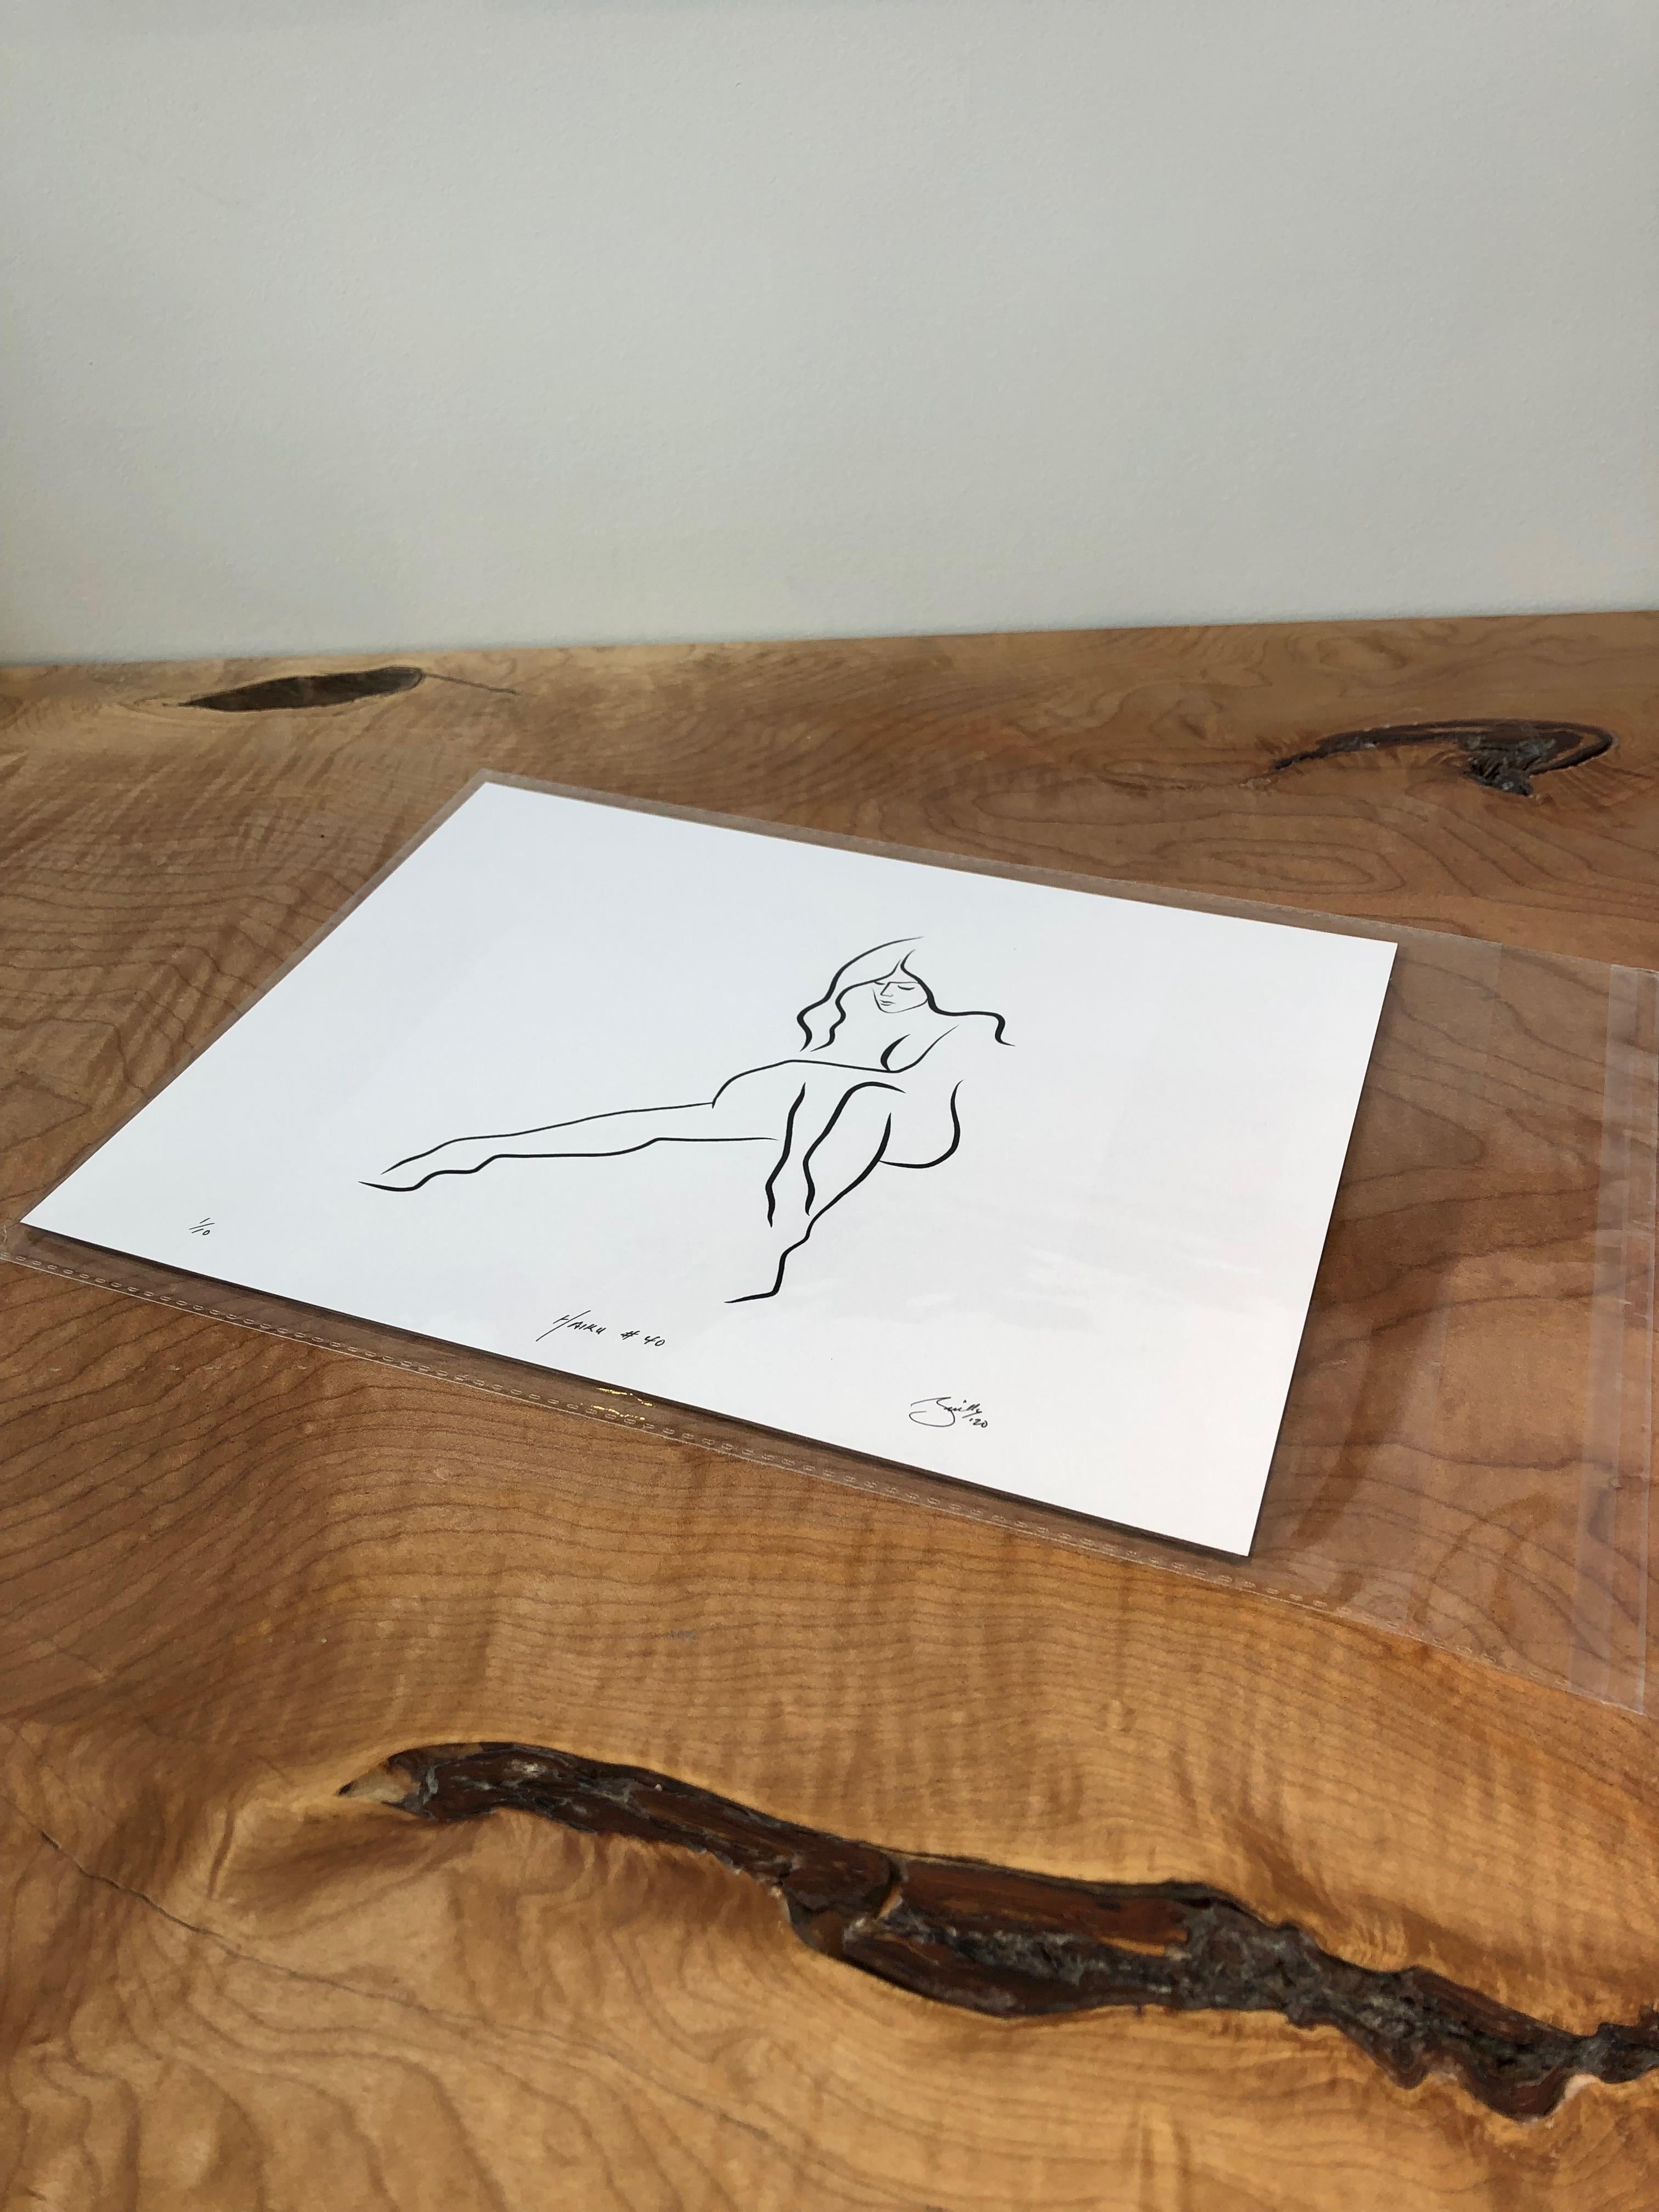 Haiku #40, 1/50 - Digital Vector Drawing Seated Female Nude Woman Figure - Print by Michael Binkley